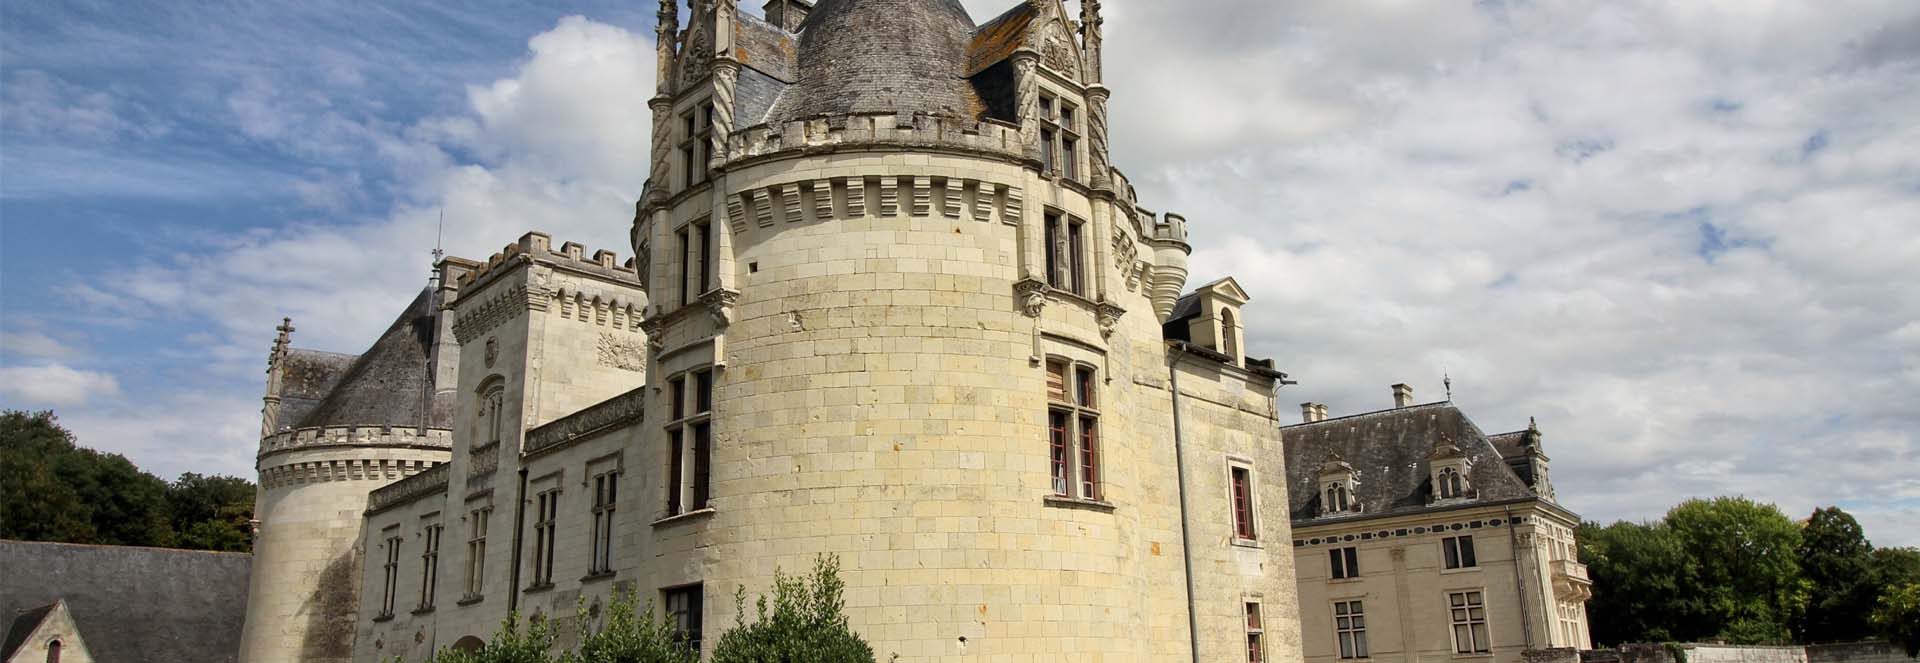 détails historiques du château de brézé près de saumur